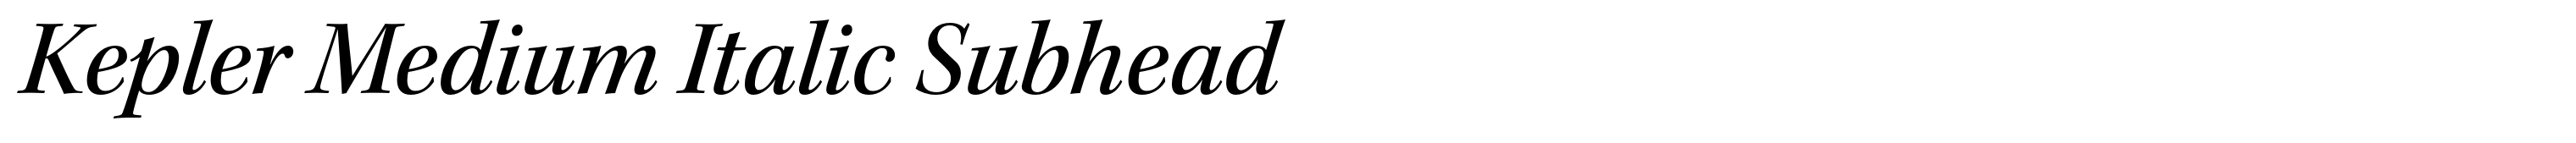 Kepler Medium Italic Subhead